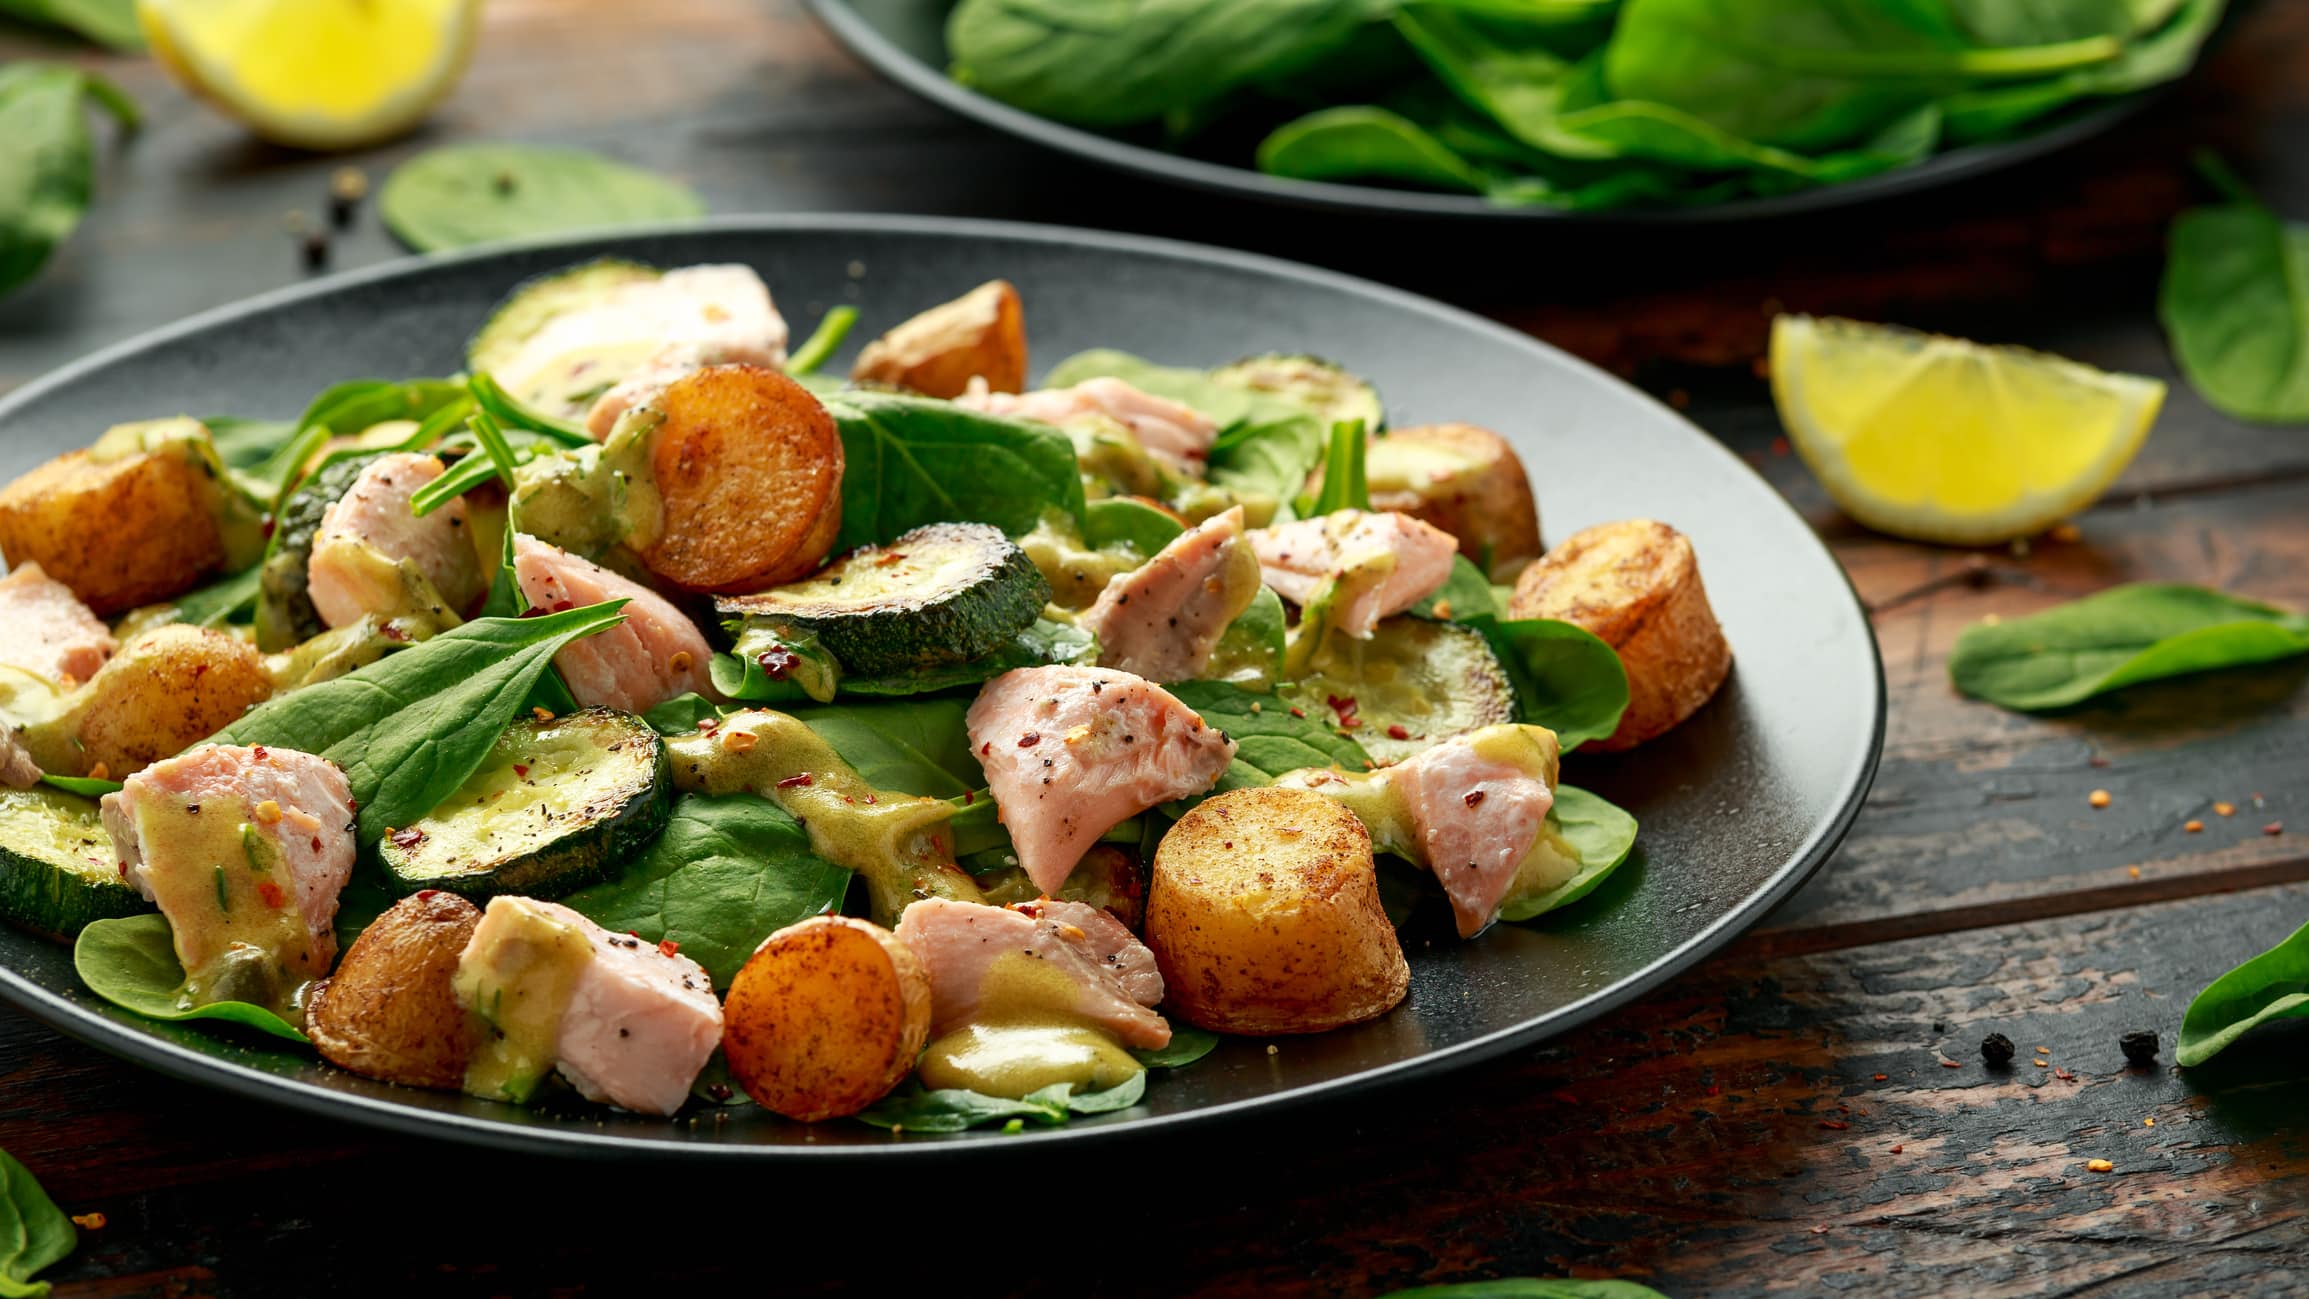 Ein Teller Salat mit Lachs, Blattspinat und Kartoffeln, daneben liegen Spinatblätter und Zitronenscheiben.